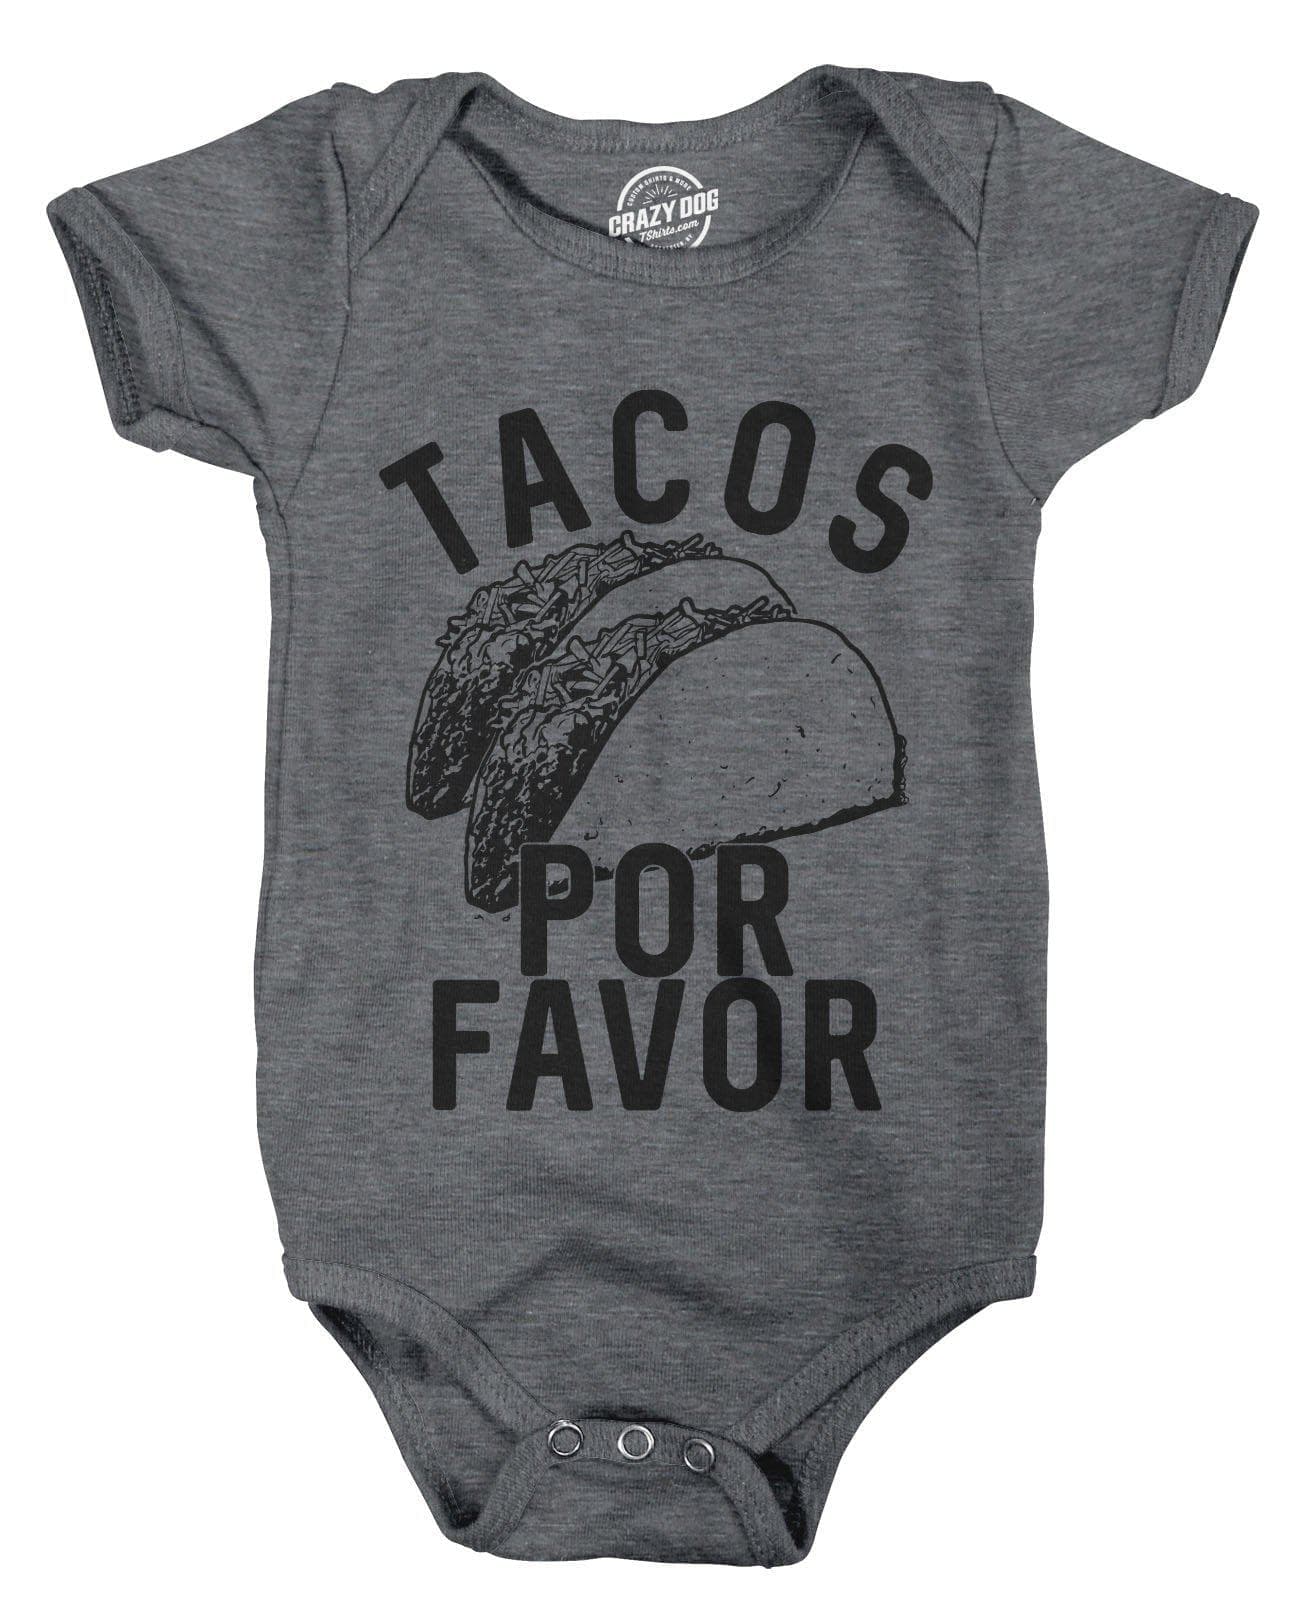 Tacos Por Favor Baby Bodysuit - Crazy Dog T-Shirts